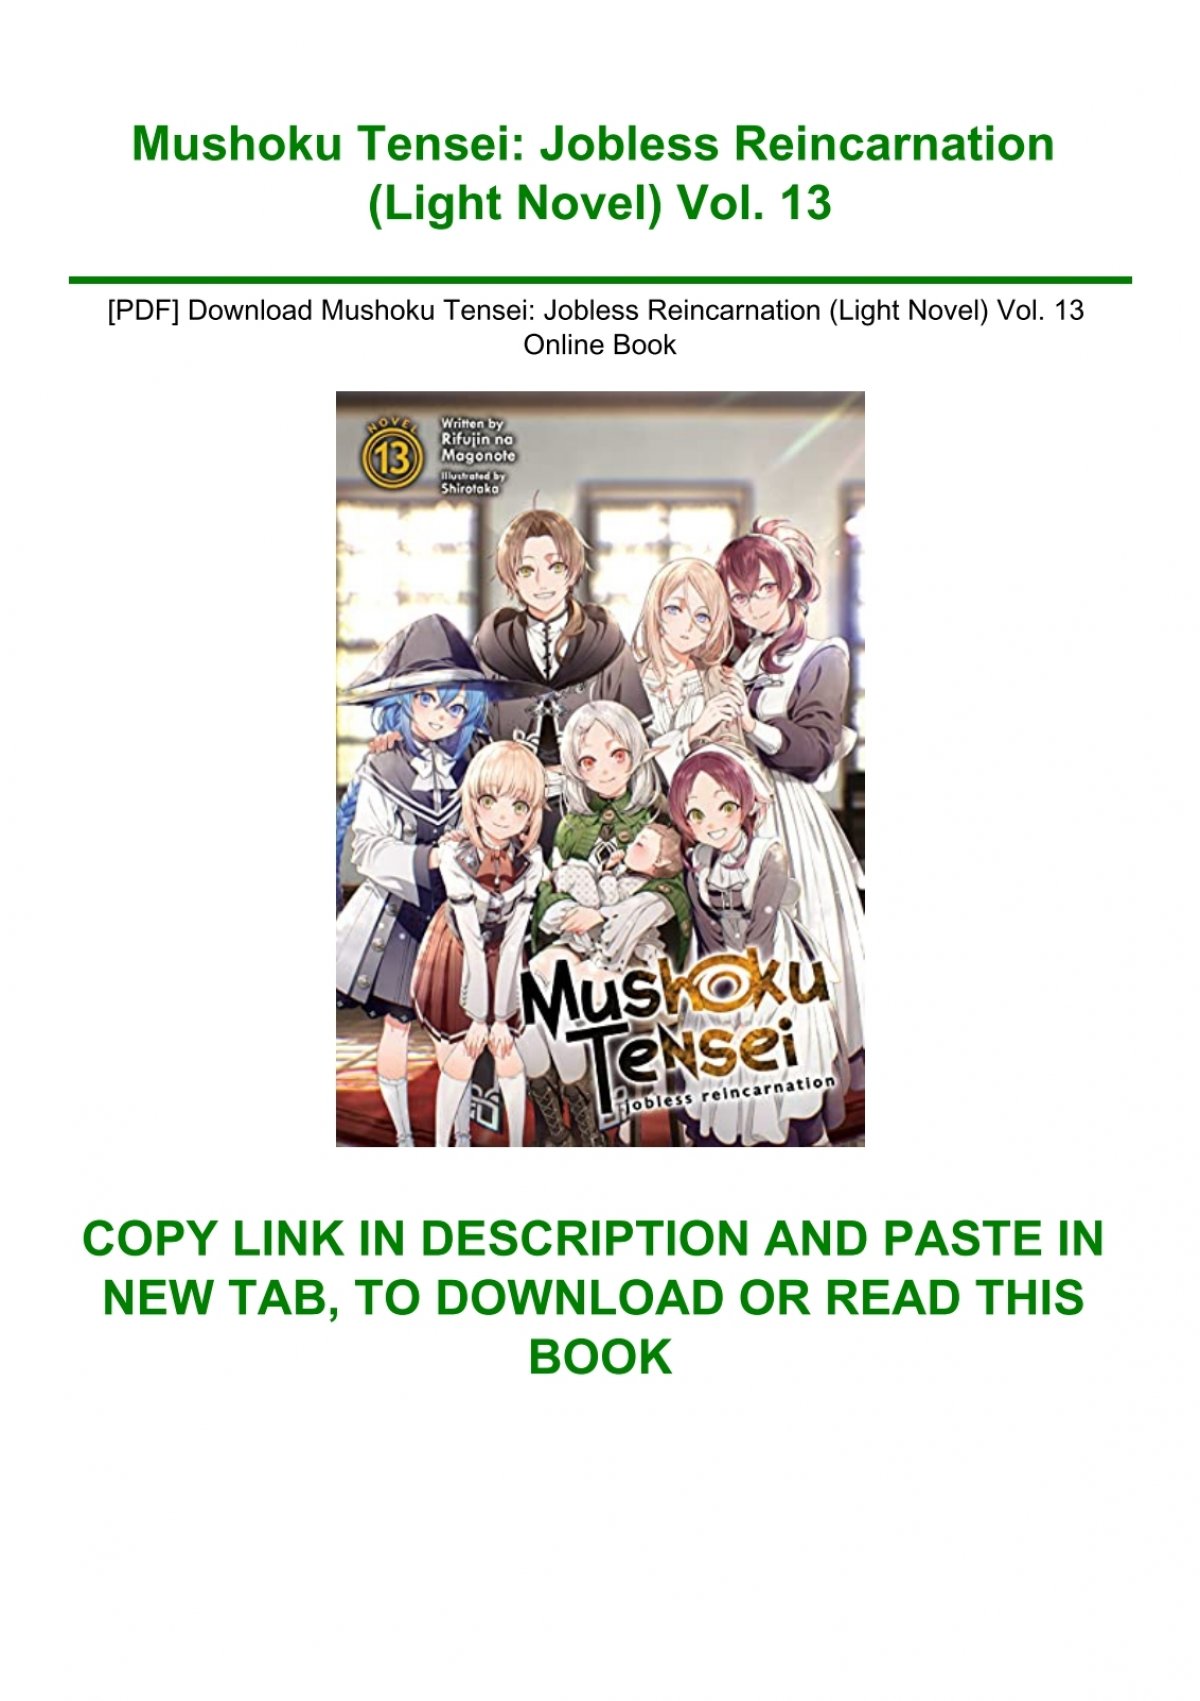 Mushoku Tensei: Jobless Reincarnation (Light Novel) Vol. 13 by